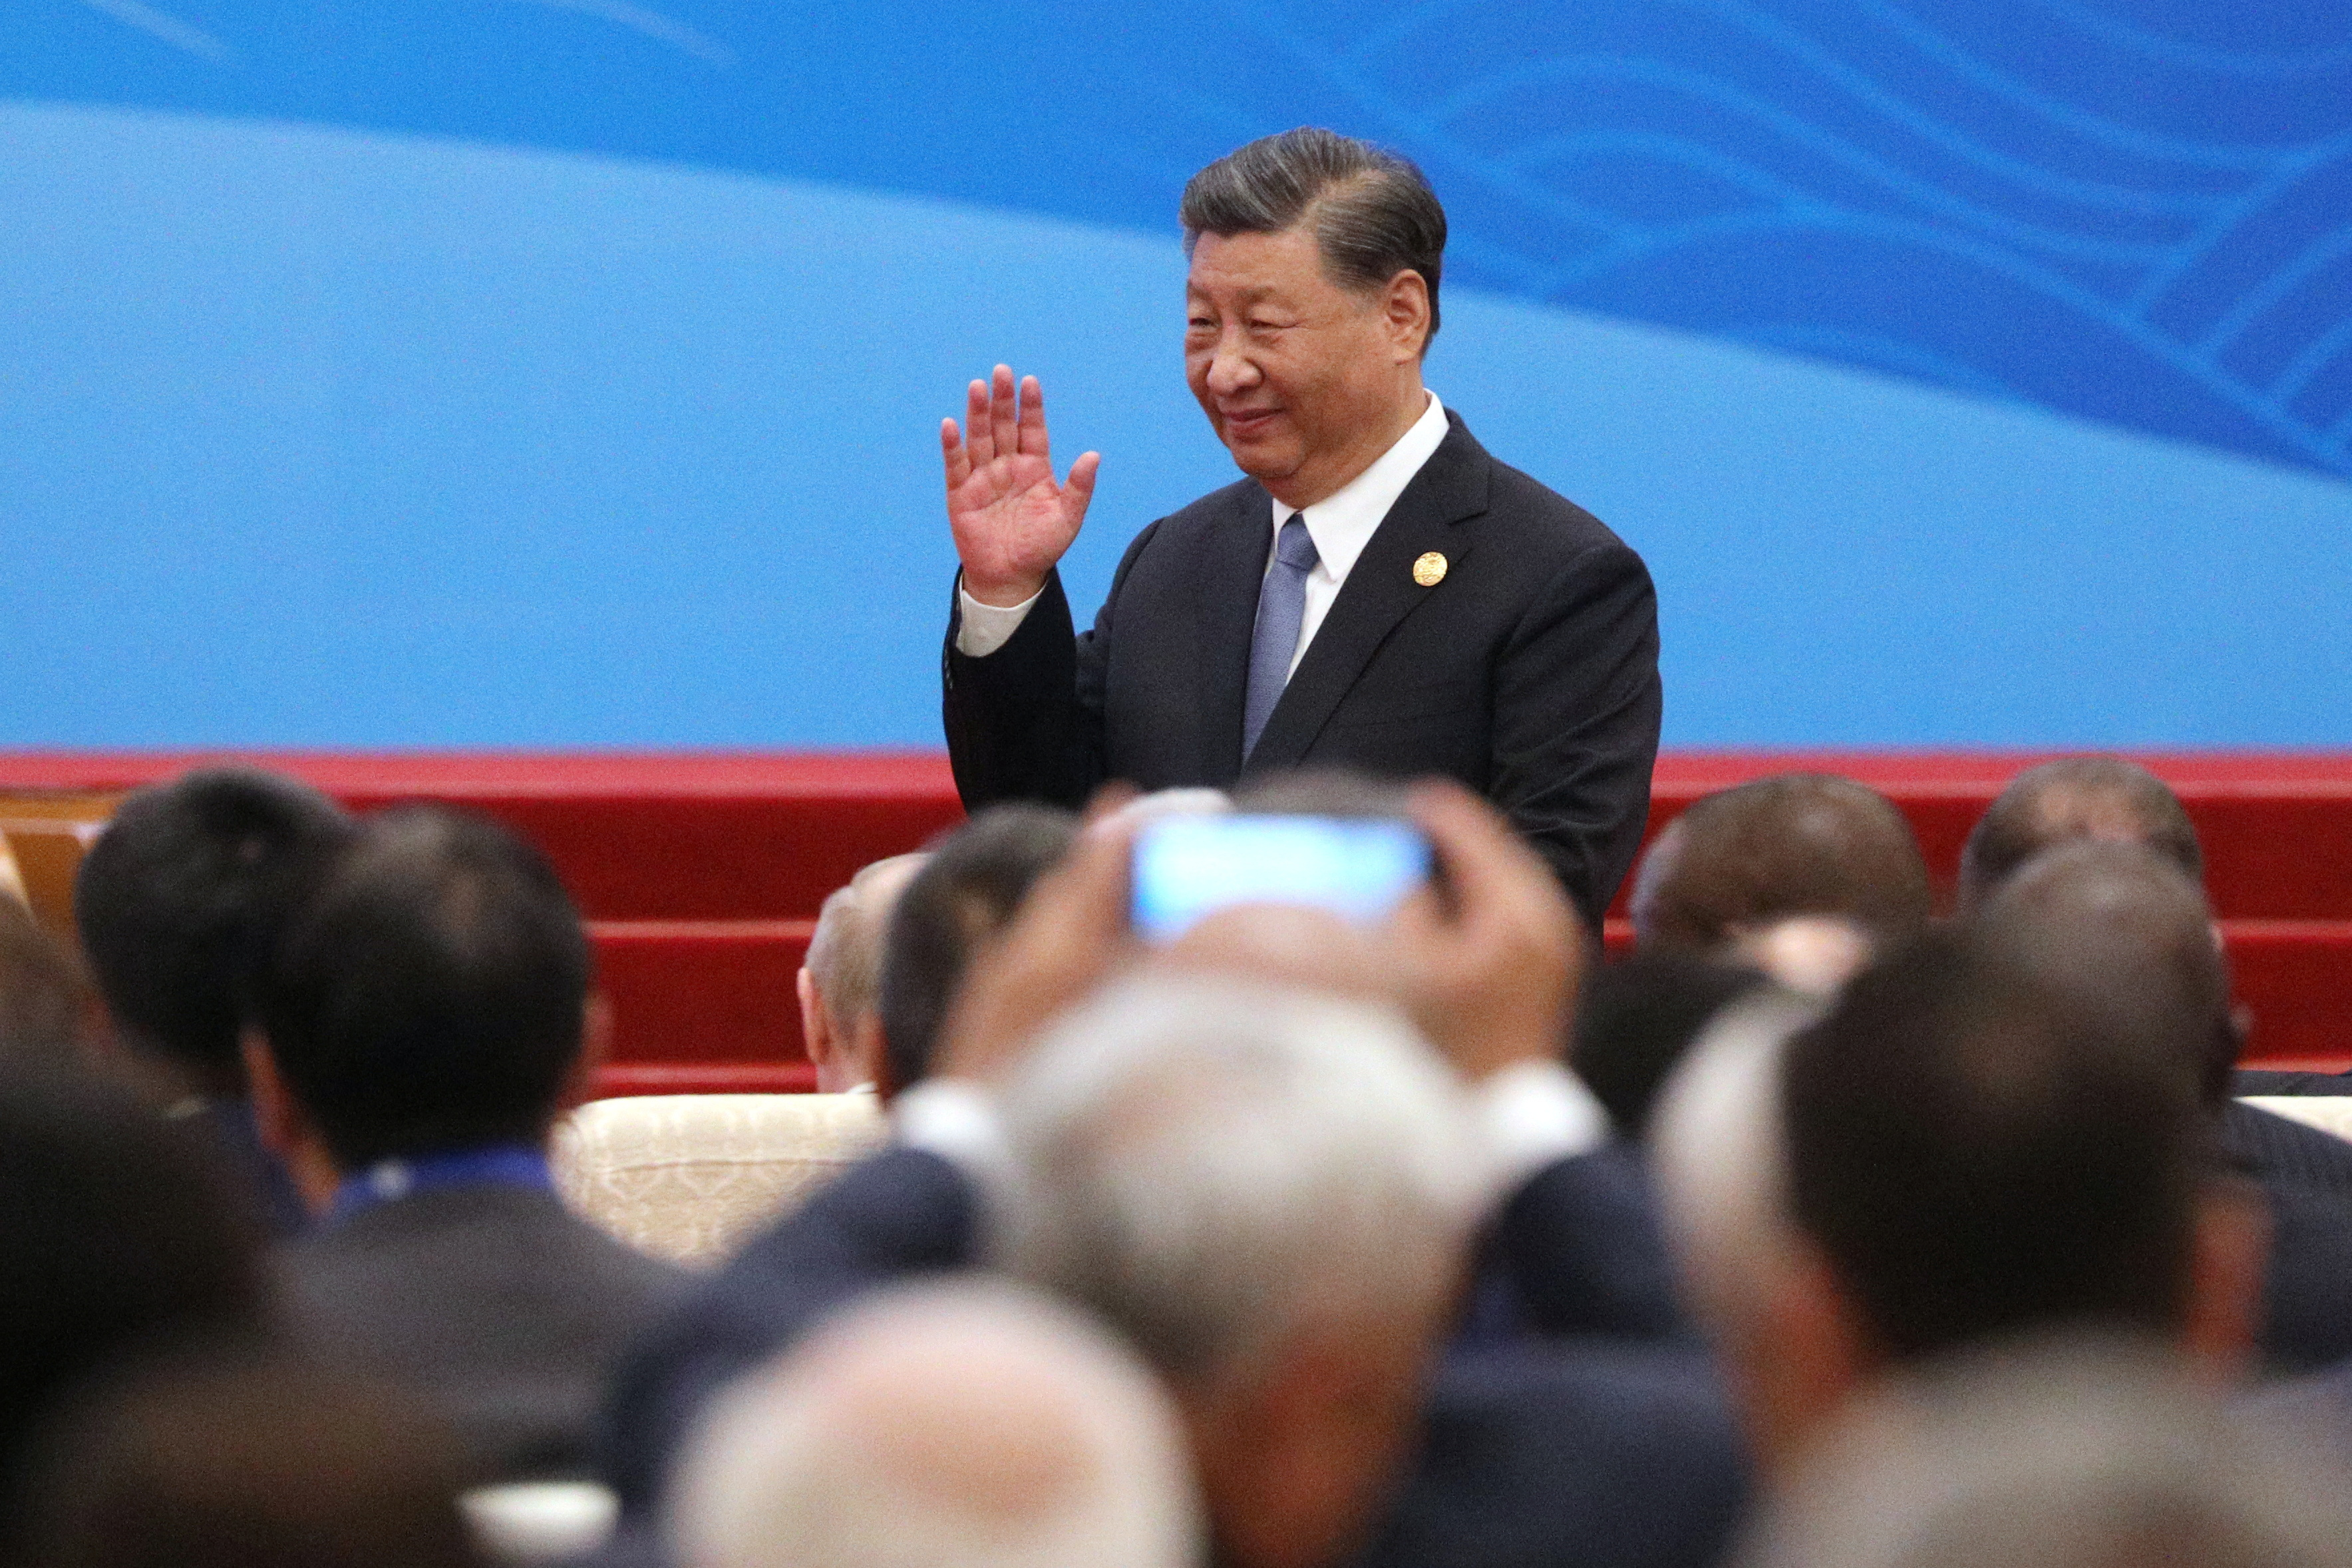 Chine: Xi Jinping promet d'être intraitable dans sa lutte contre la corruption